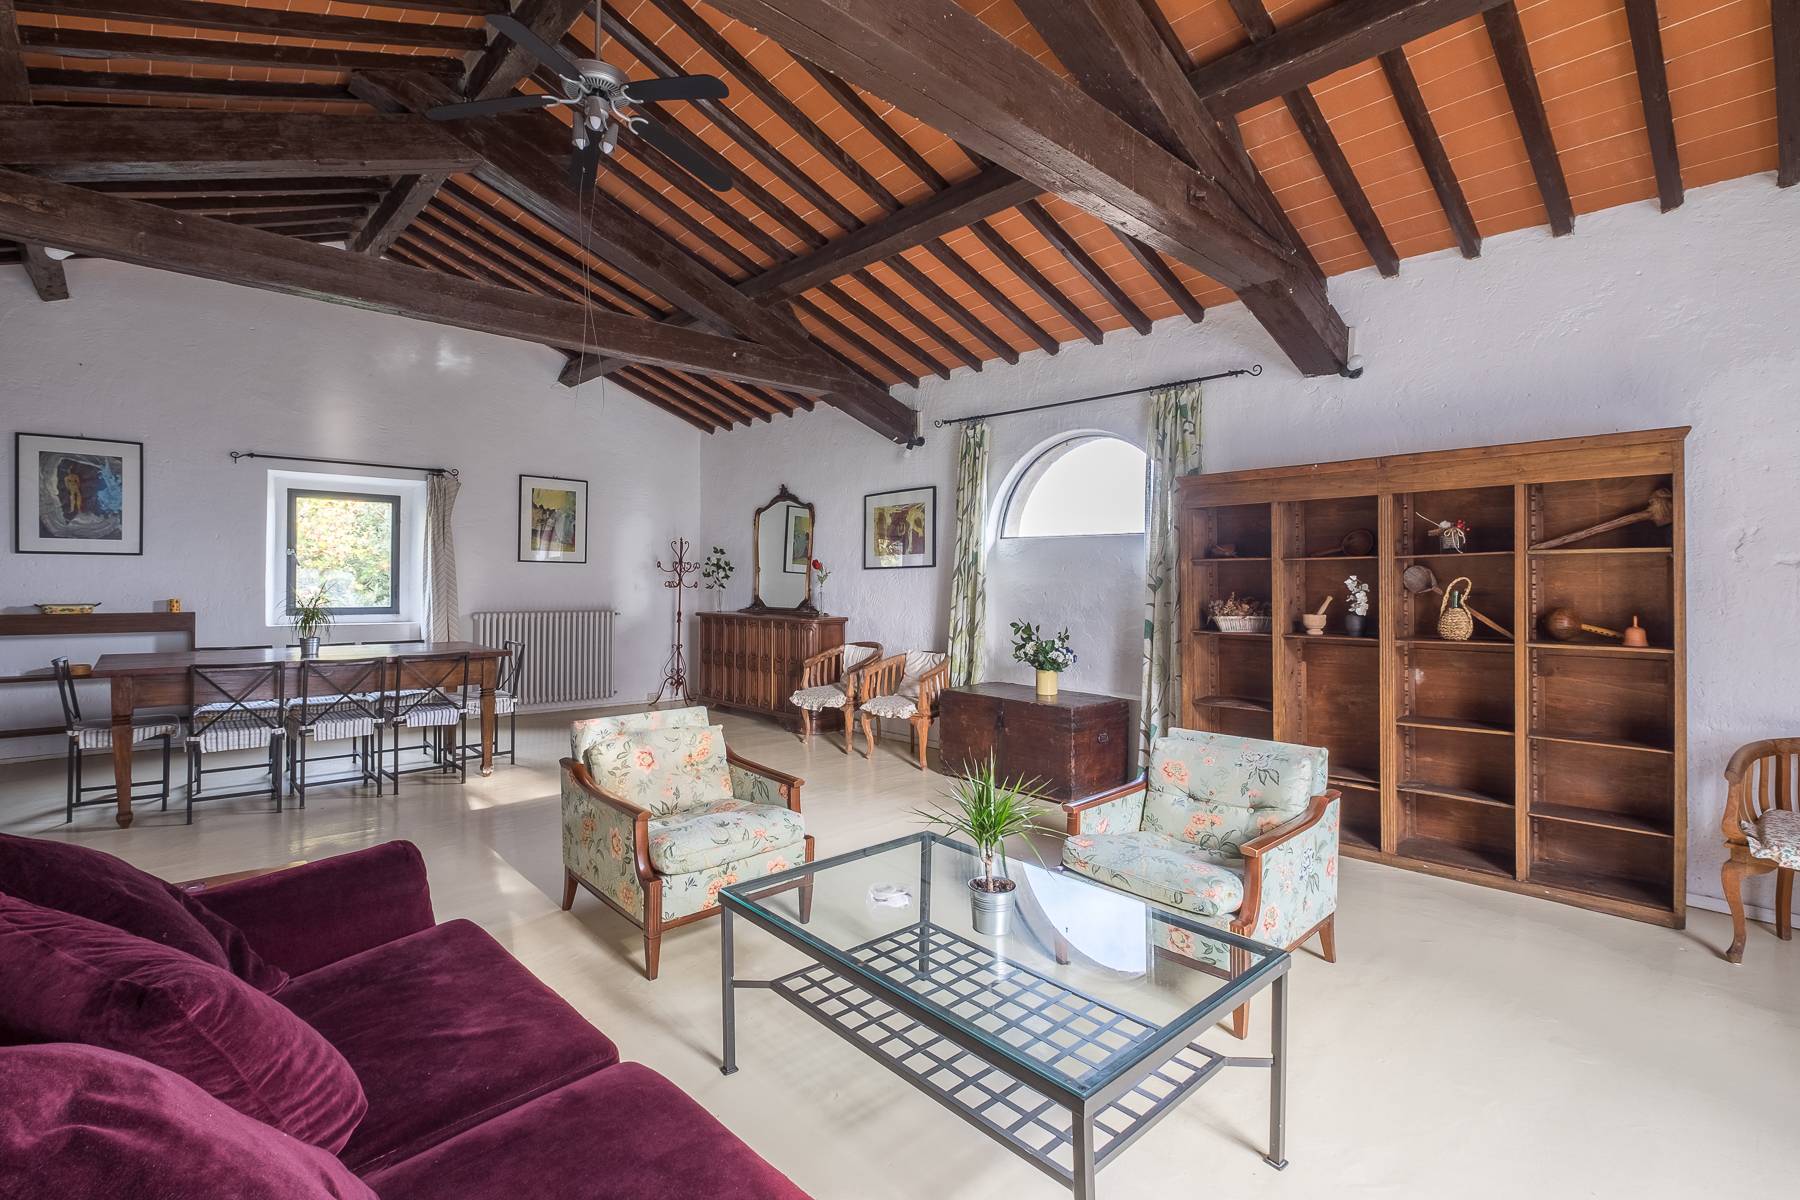 Villa in Vendita a Rignano Sull'Arno: 5 locali, 3000 mq - Foto 8